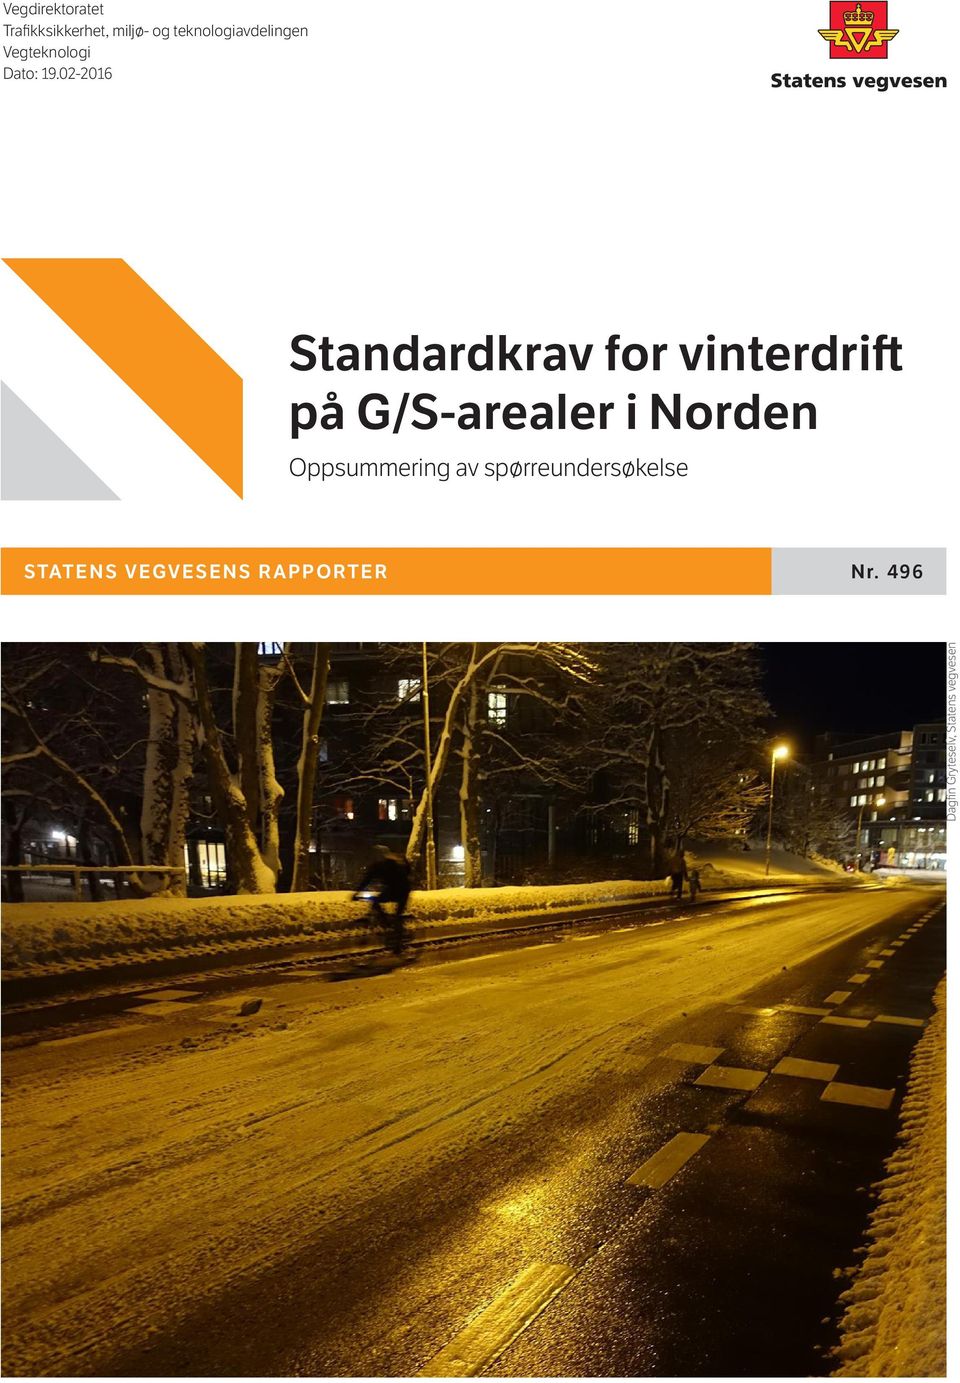 02-2016 Standardkrav for vinterdrift på G/S-arealer i Norden